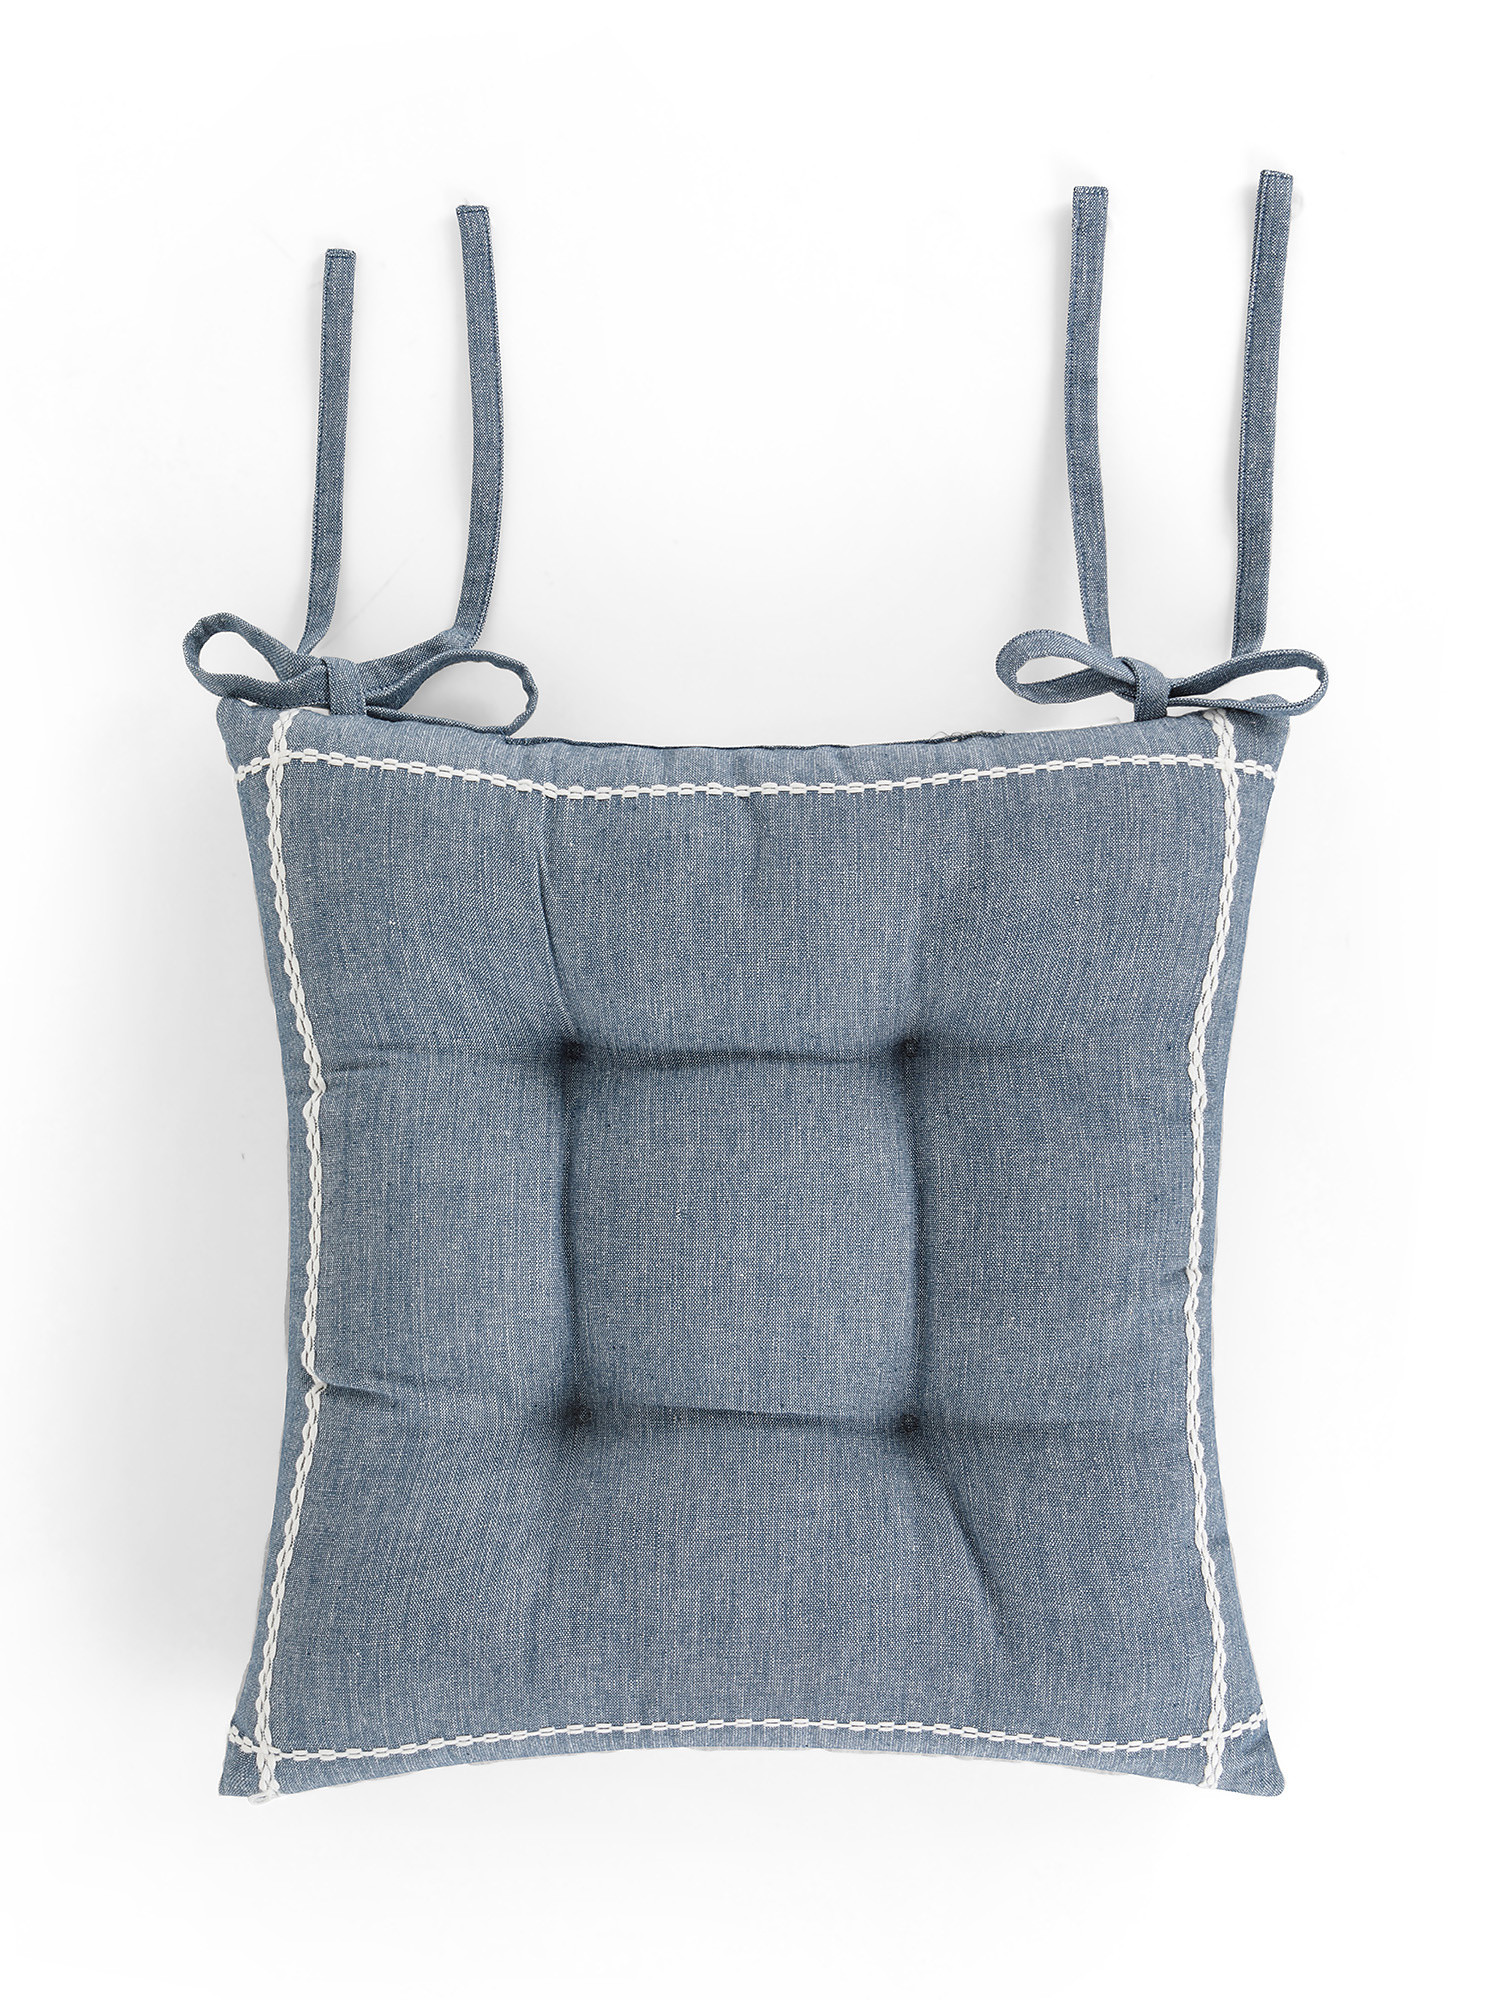 Cuscino da sedia in cotone con ricamo trecce, Azzurro, large image number 0